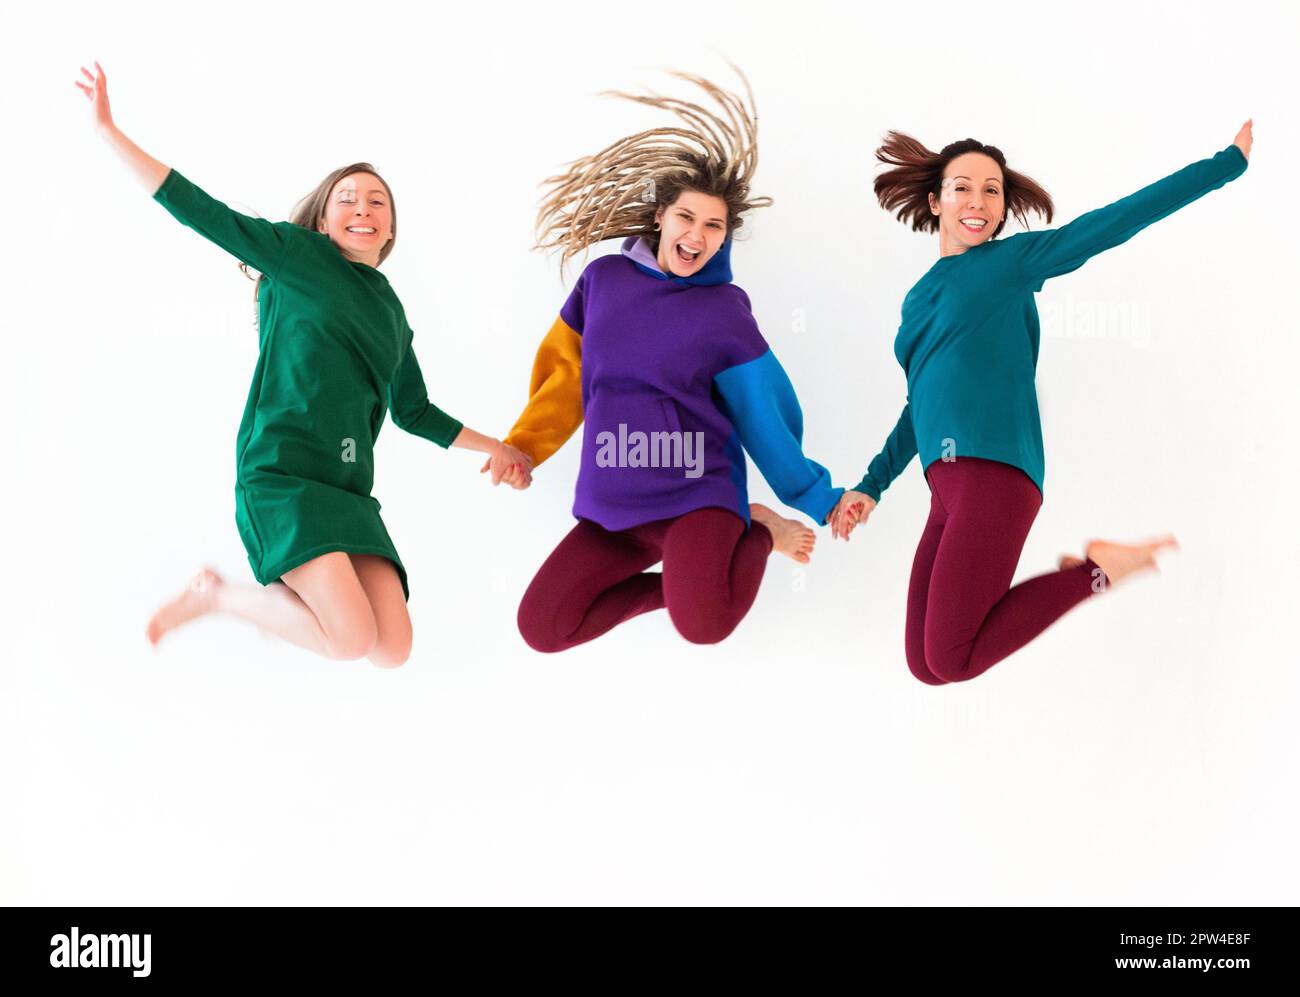 Immagine di tre donne allegre a piedi nudi di diversa età che tengono le mani insieme, saltando e divertendosi, godendo la vacanza, festeggiando Foto Stock